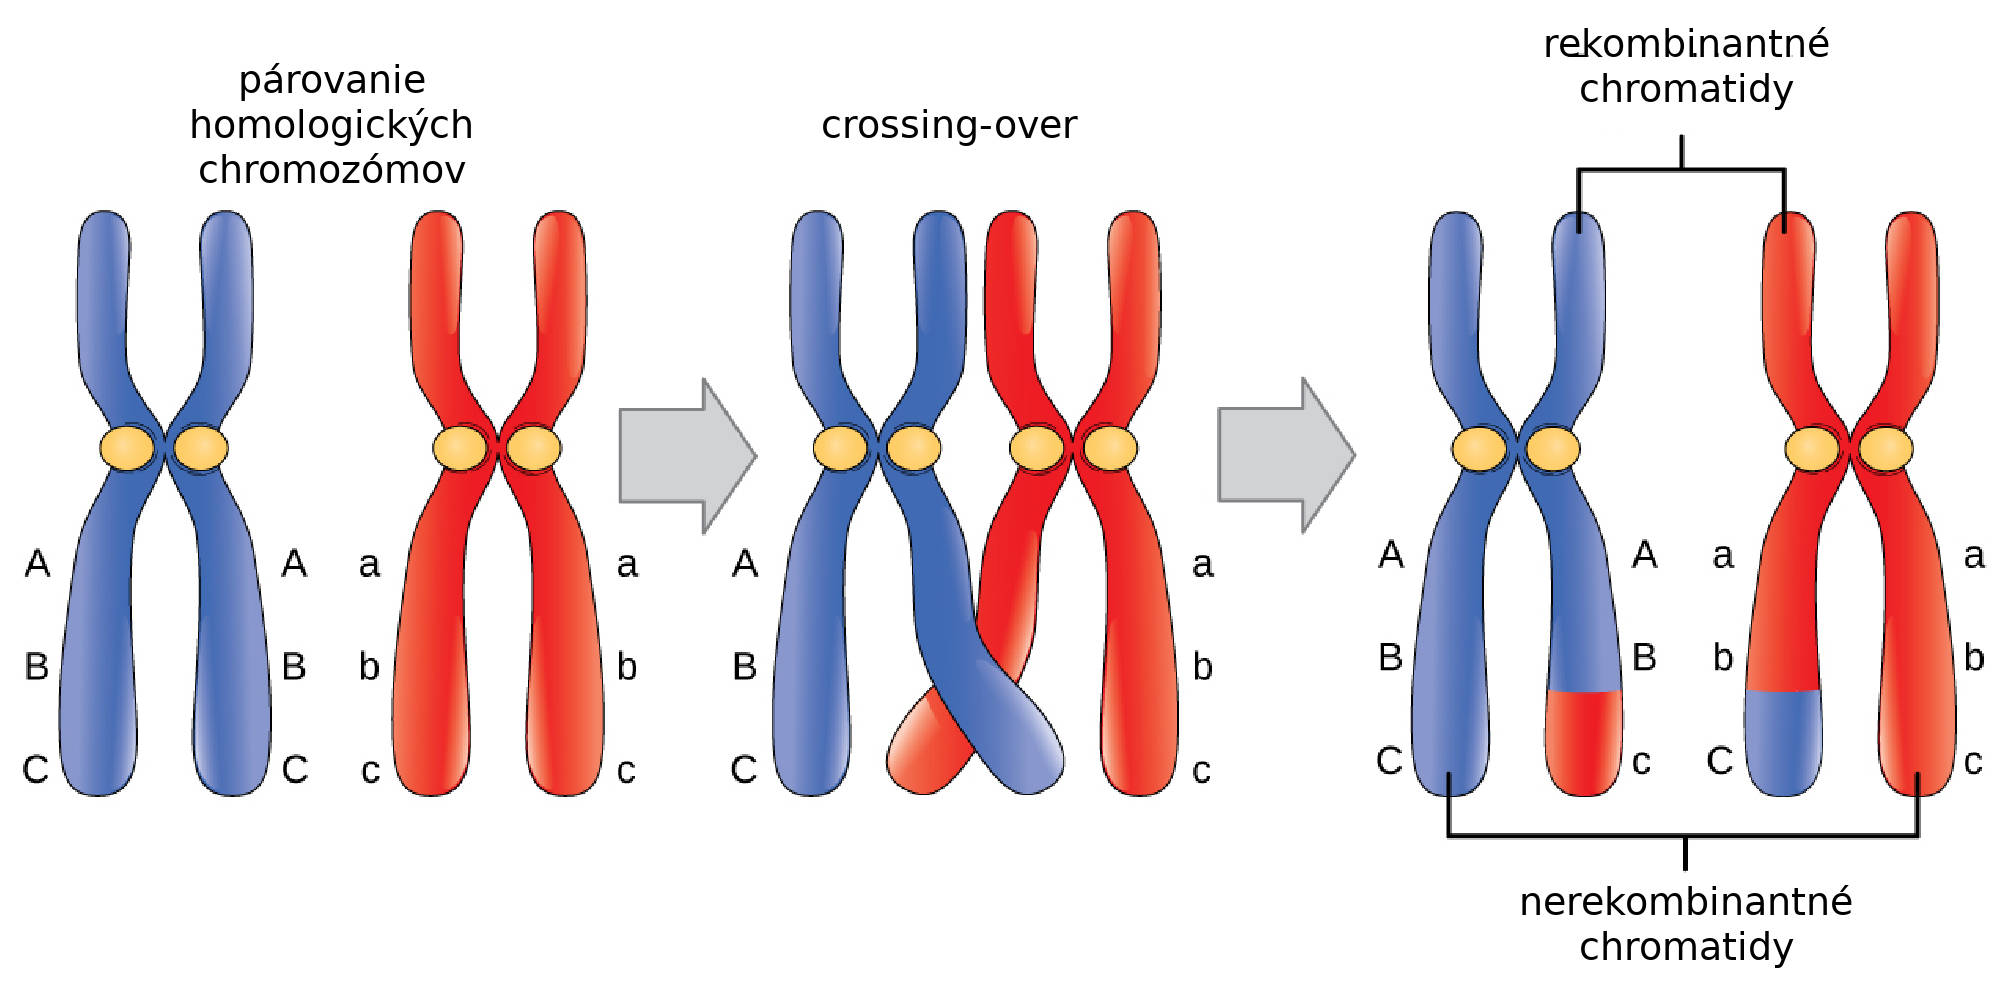 Párovanie homologických chromozómov, crossing-over a vznik rekombinantných chromatíd